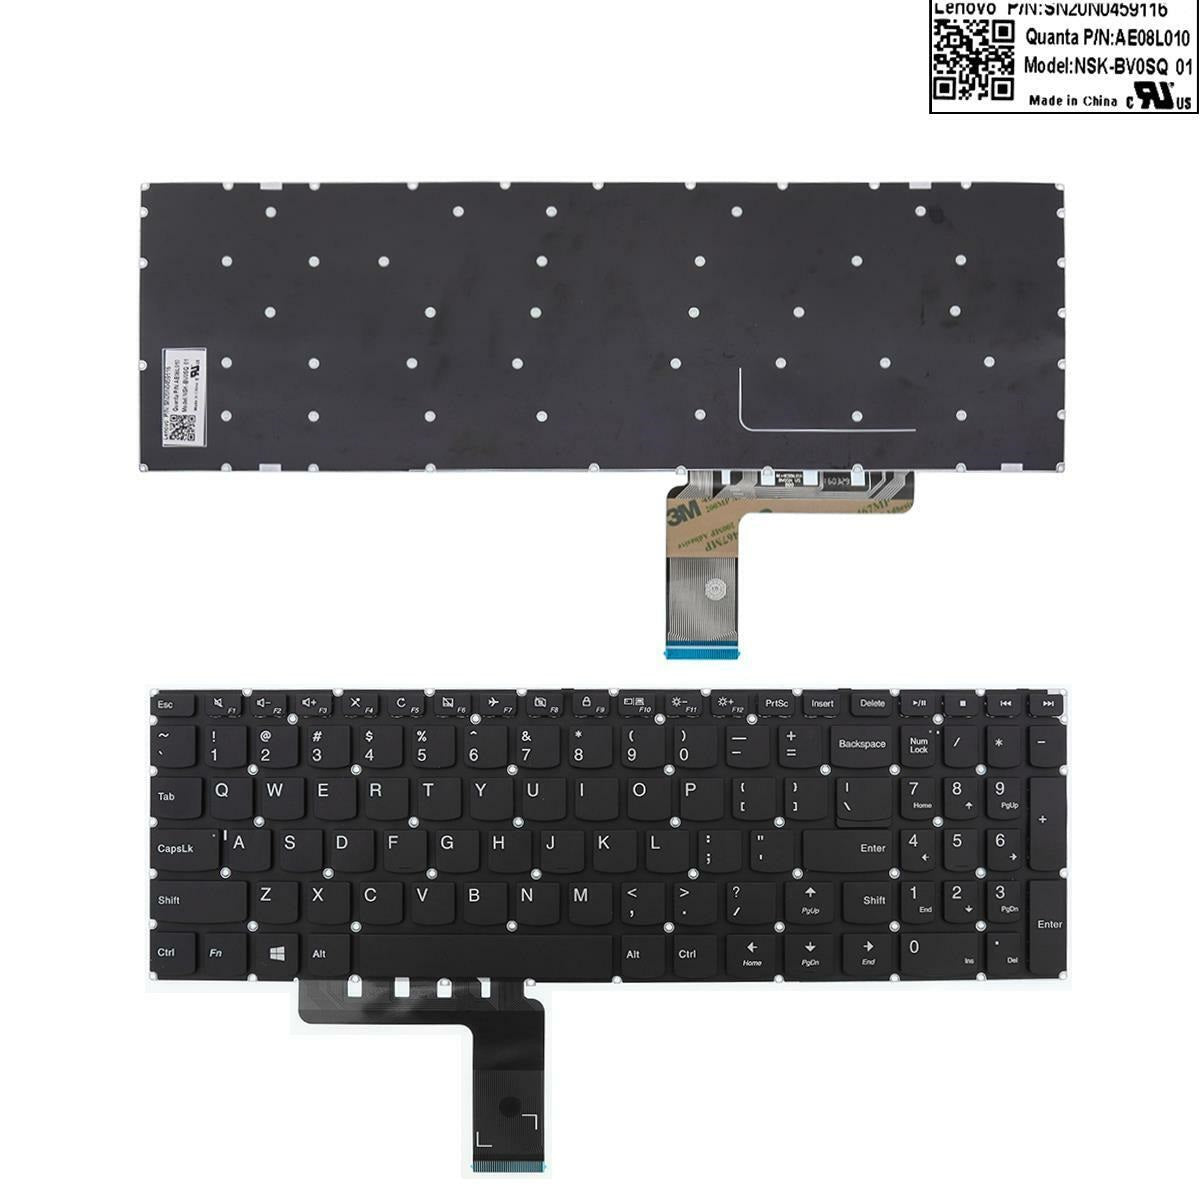 Lenovo SN20N0459116 Keyboard 730-13IKB 730-13IWL 730-15IKB 730-15IWL NSK-BZ1SQ AE08L010